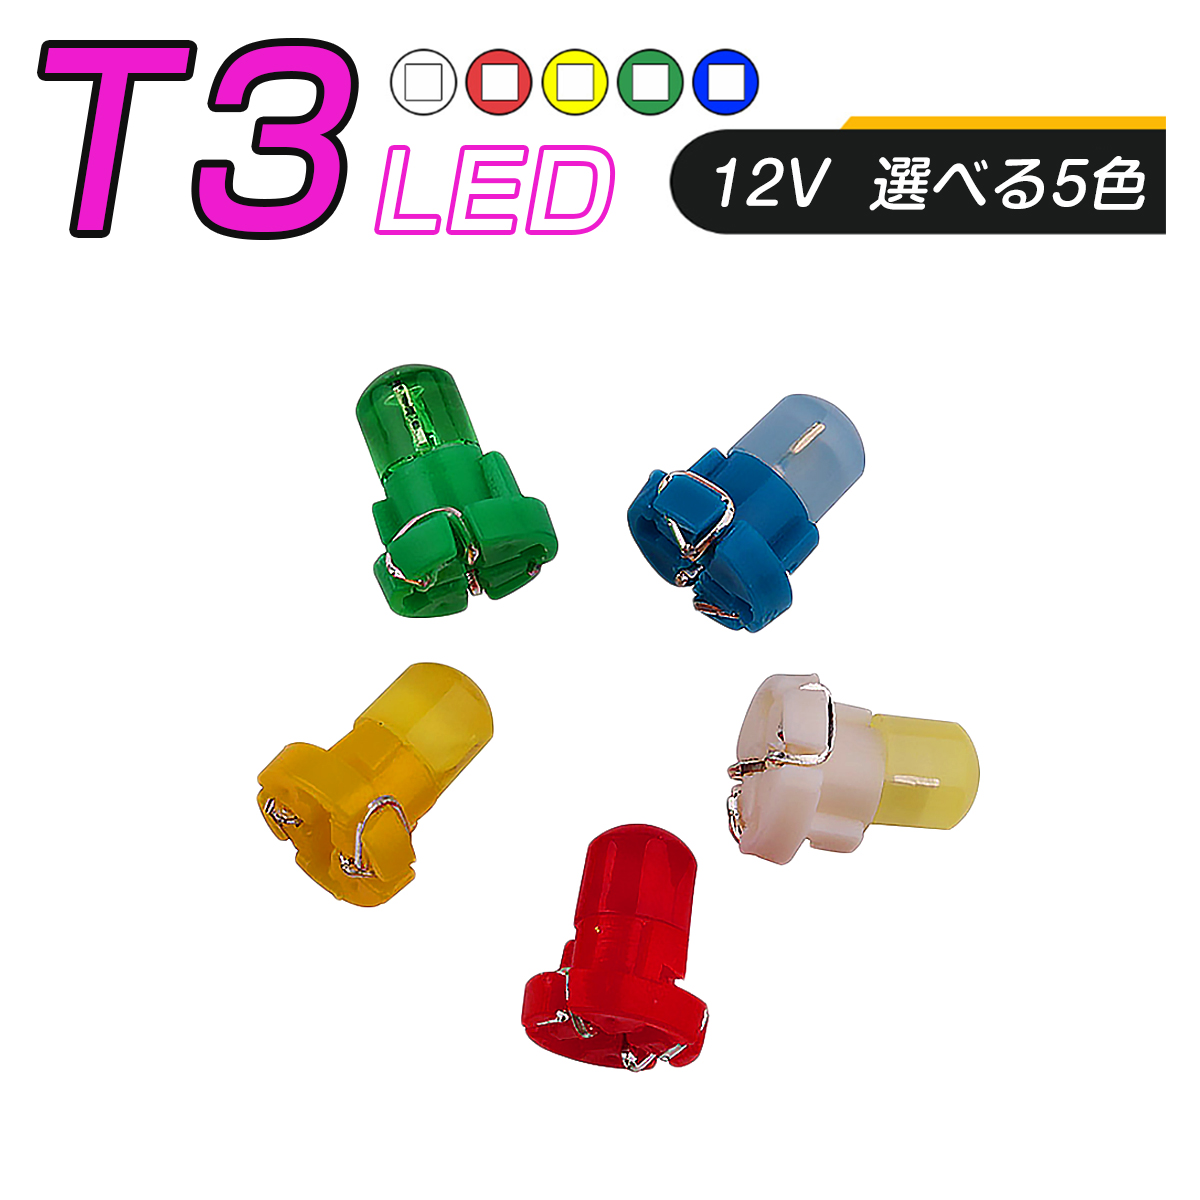 卸売B2B LED T3 SMD 選べるカラー5色 メーター球 タコランプ インジケーター エアコンパネル 超拡散 全面発光 1個売り SDM便送料無料 1ヶ月保証 K&M